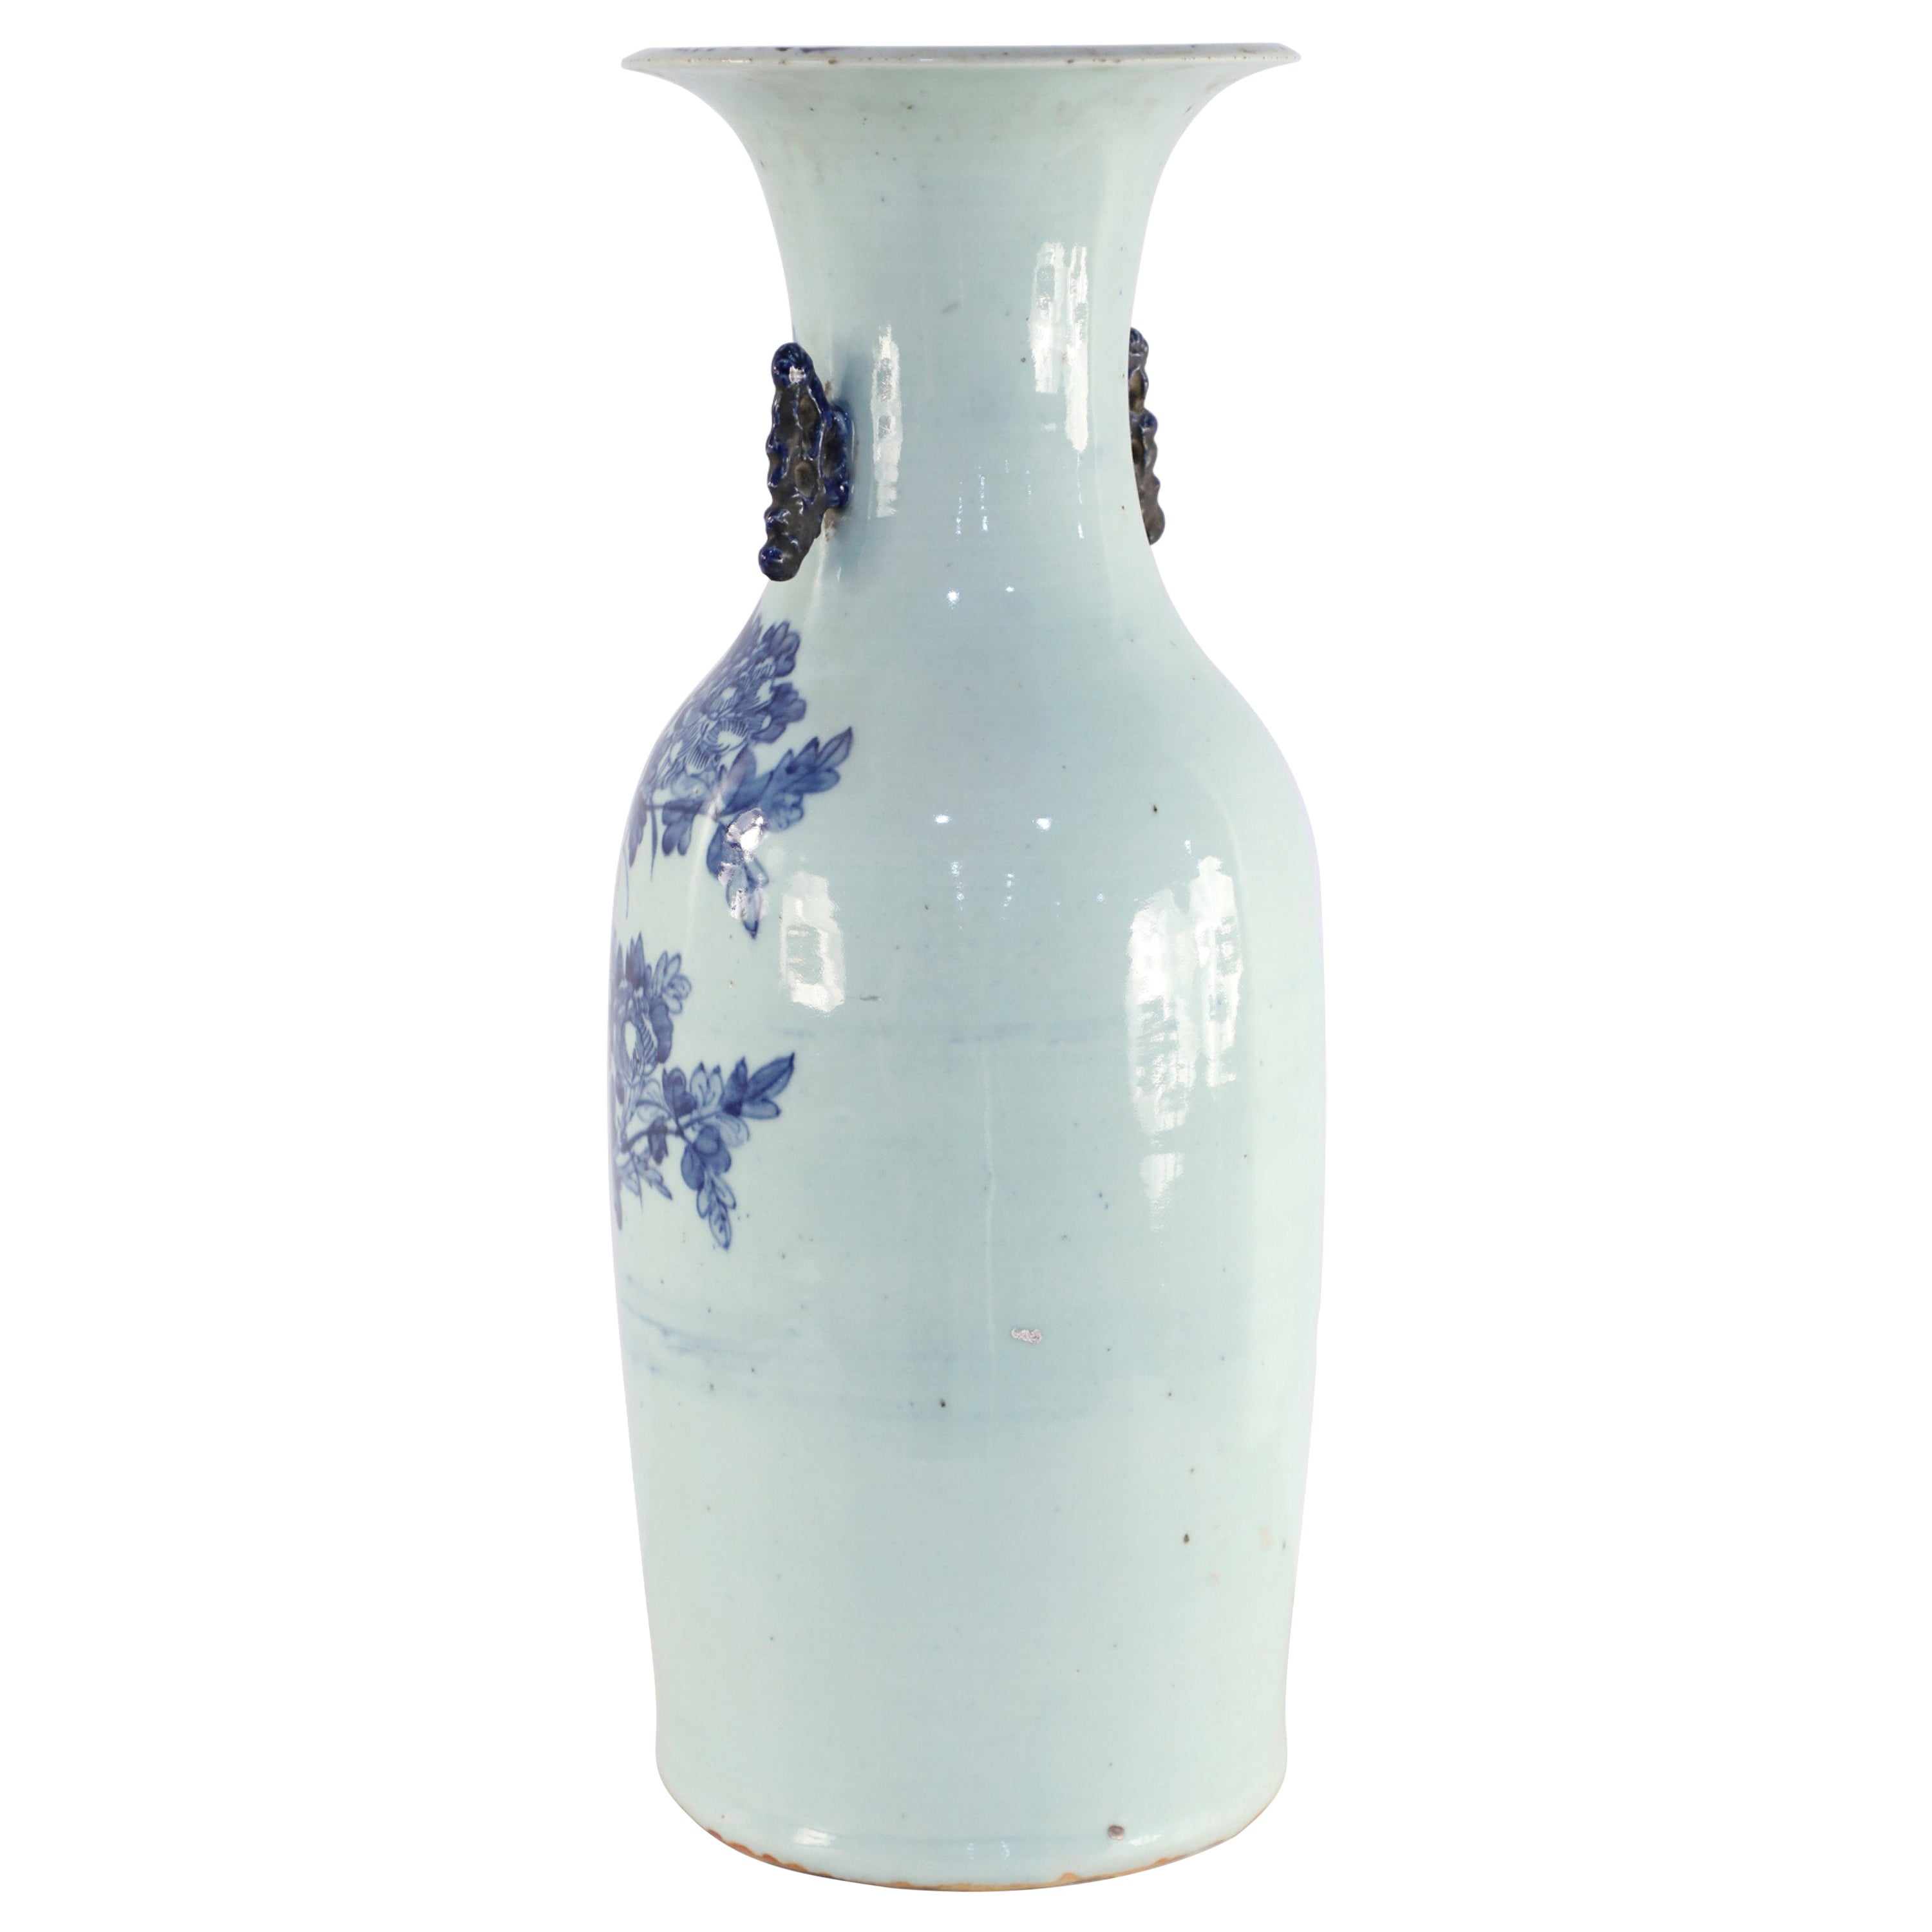 Chinesische Porzellanurne mit blauem und weißem Pfauenmotiv, Chinesisch